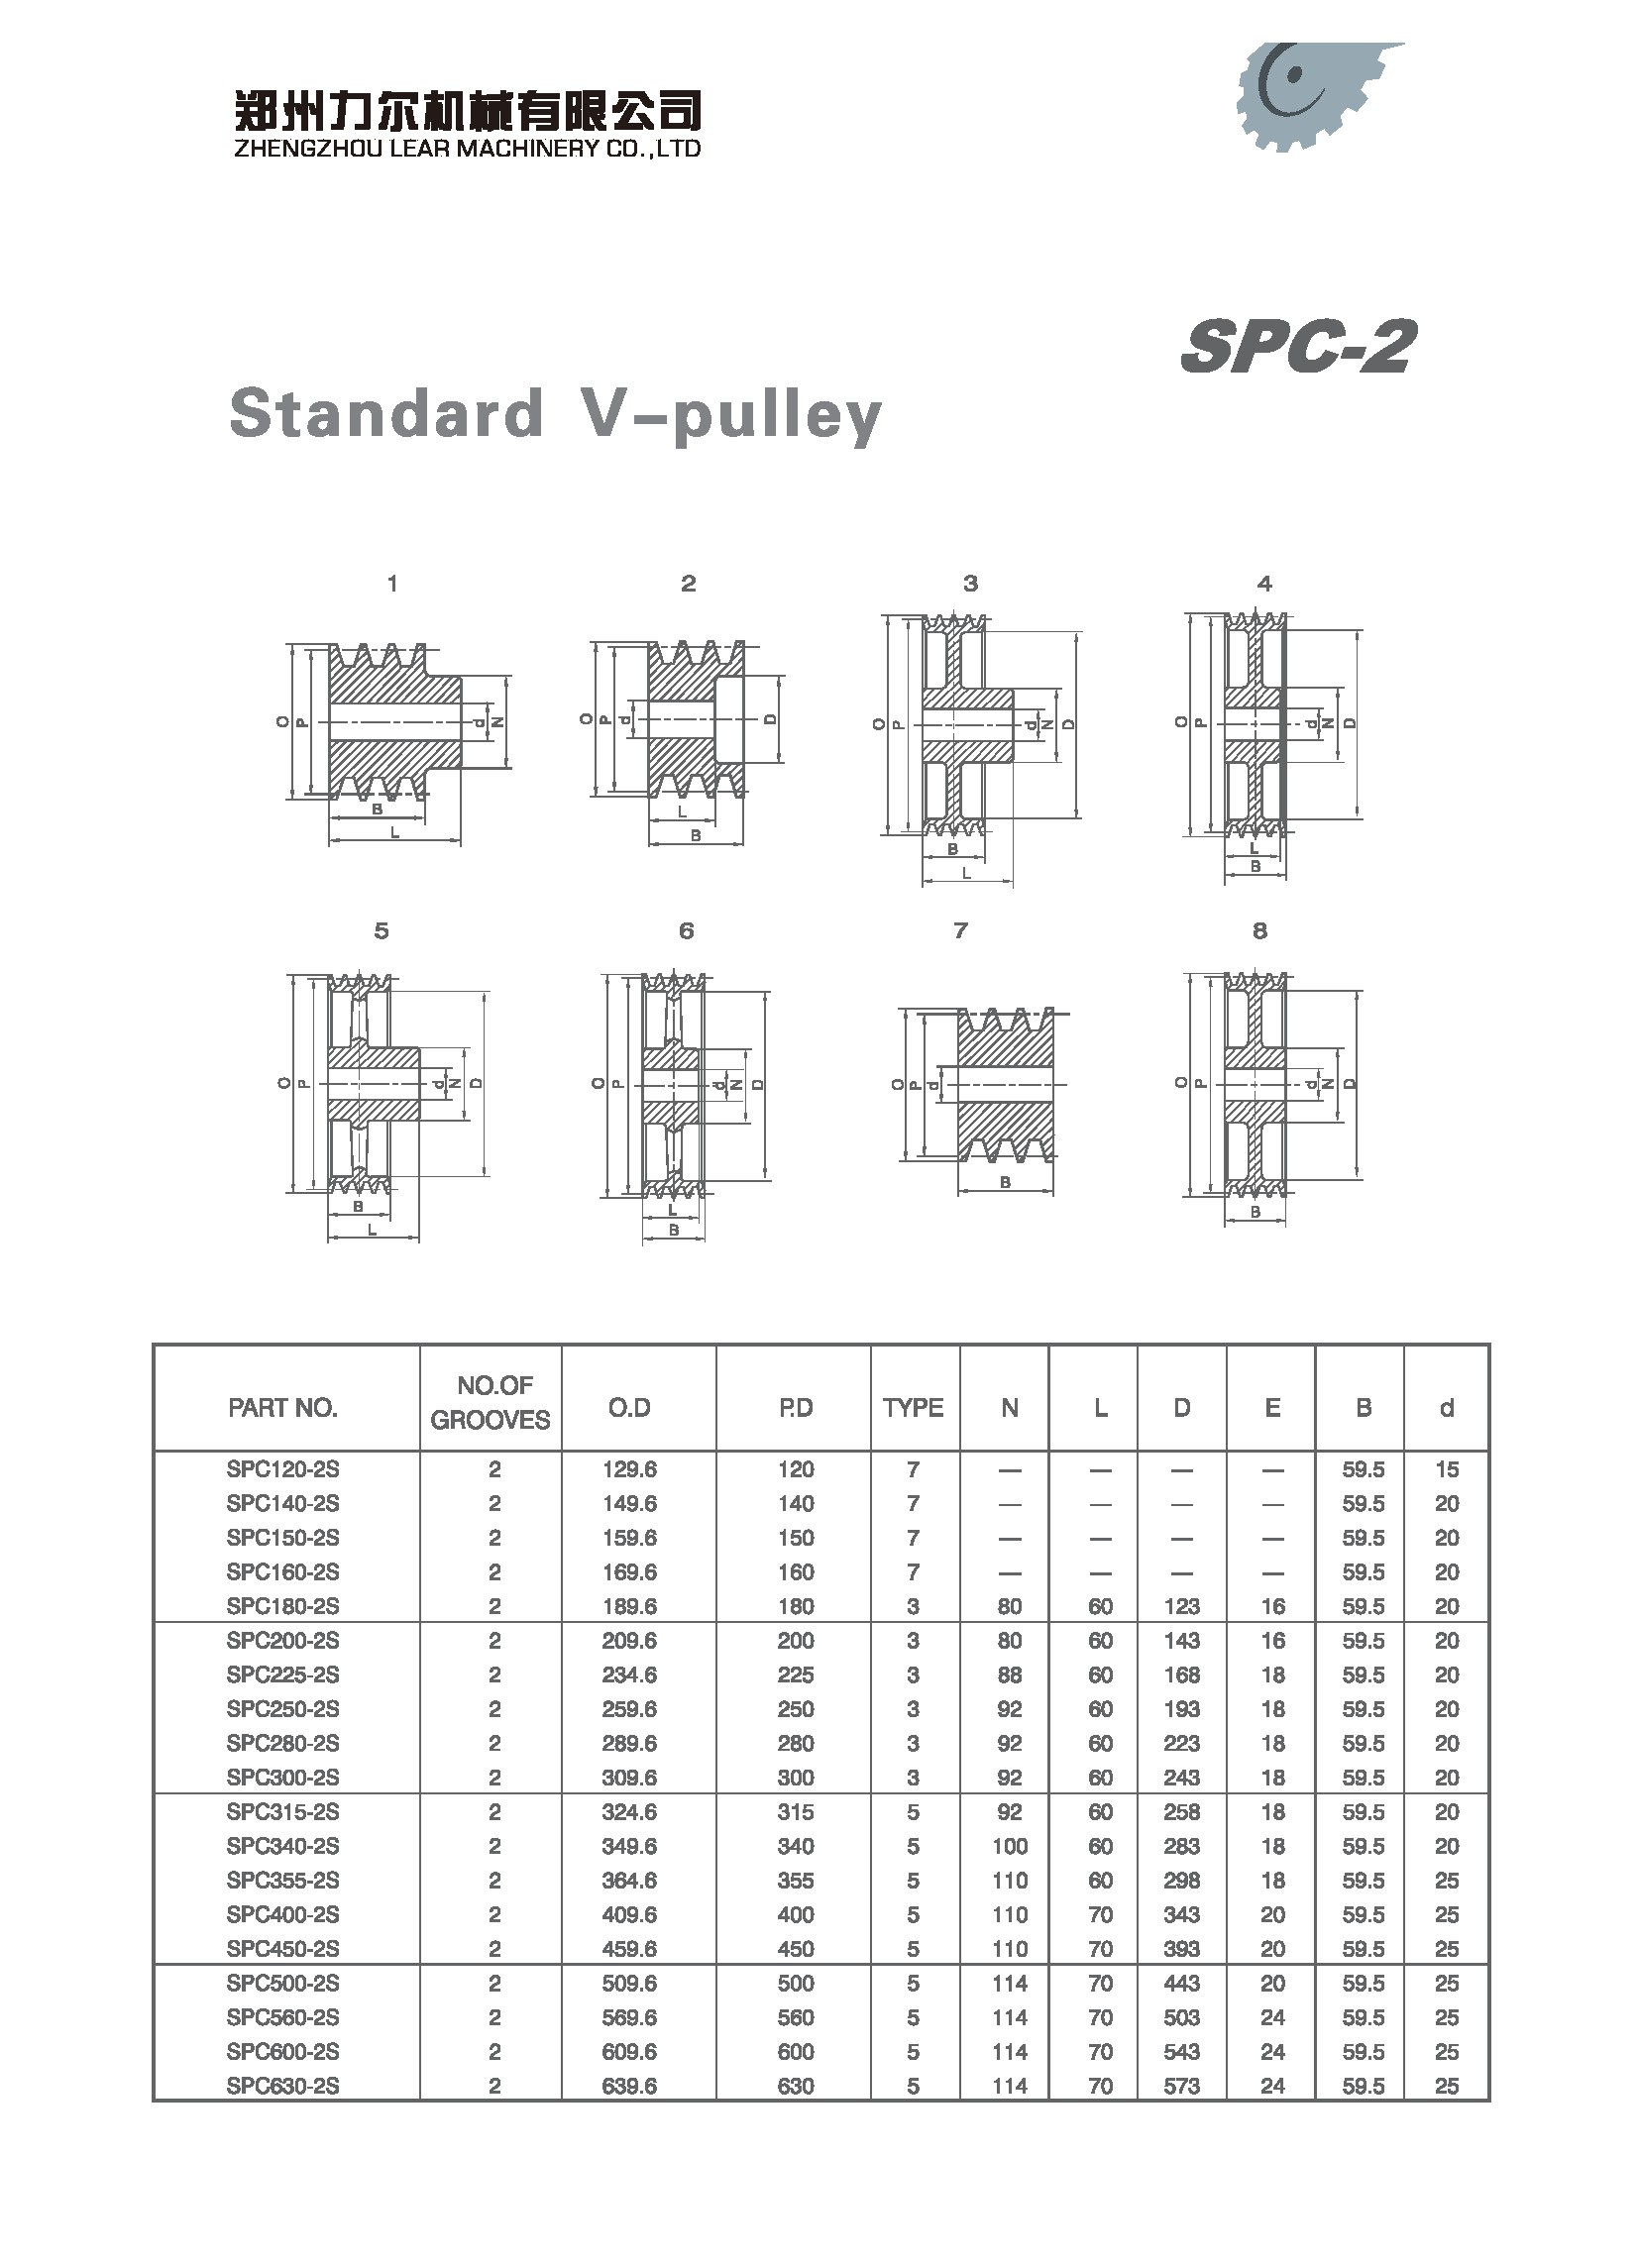 SPC120-2S	 | 
SPC140-2S	 | 
SPC150-2S	 | 
SPC160-2S	 | 
SPC180-2S	 | 
SPC200-2S	 | 
SPC225-2S	 | 
SPC250-2S	 | 
SPC280-2S	 | 
SPC300-2S	 | 
SPC315-2S	 | 
SPC340-2S	 | 
SPC355-2S	 | 
SPC400-2S	 | 
SPC450-2S	 | 
SPC500-2S	 | 
SPC560-2S	 | 
SPC600-2S	 | 
SPC630-2S	 | 